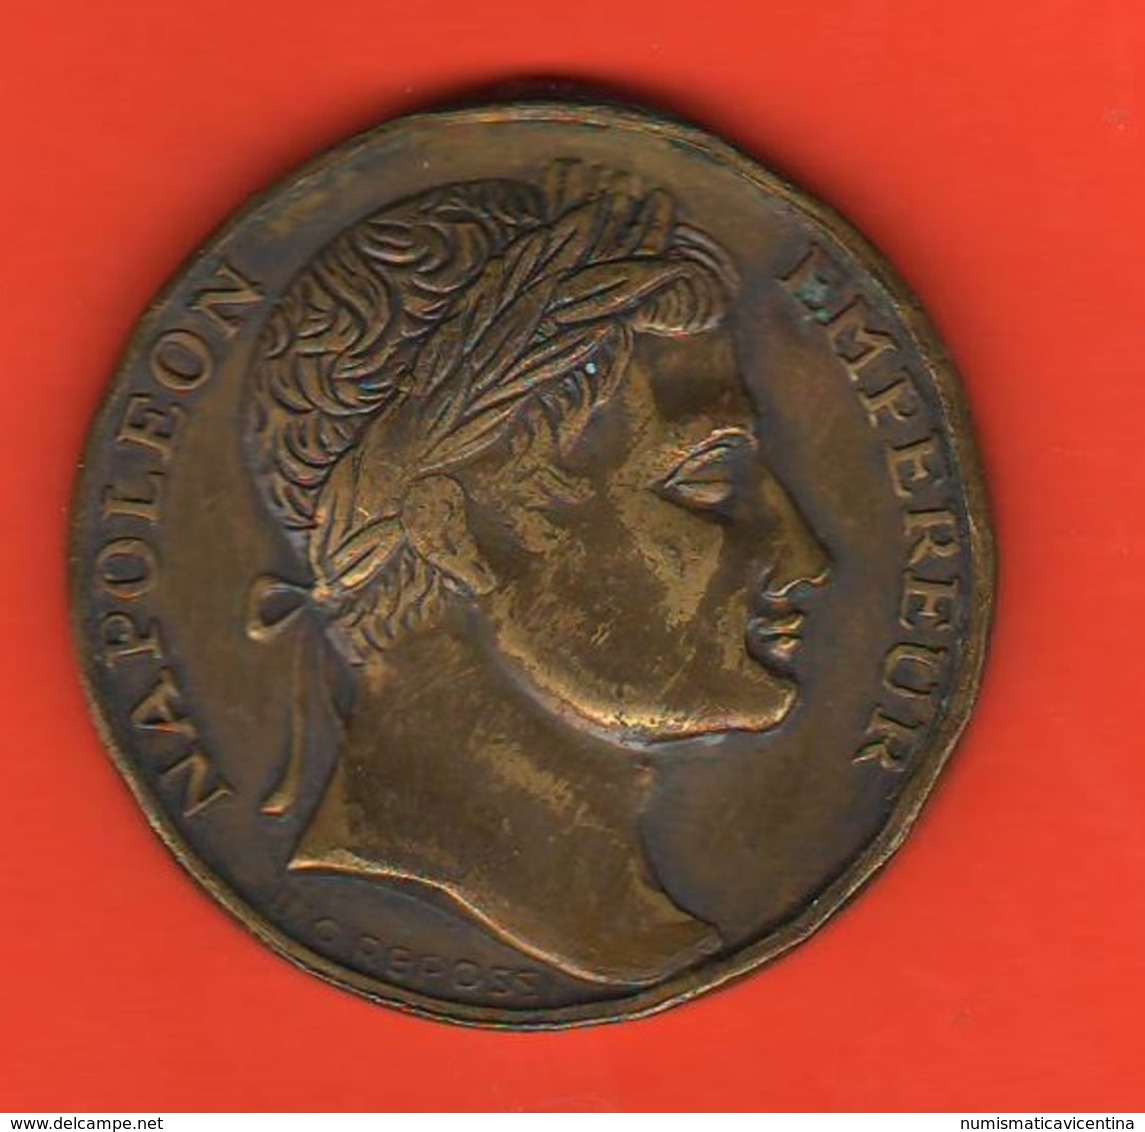 Napoleone Imperatore Napolèon I° Medaille Medaglia 1805 Roi D'Italie Corona Ferrea - Monarchia/ Nobiltà